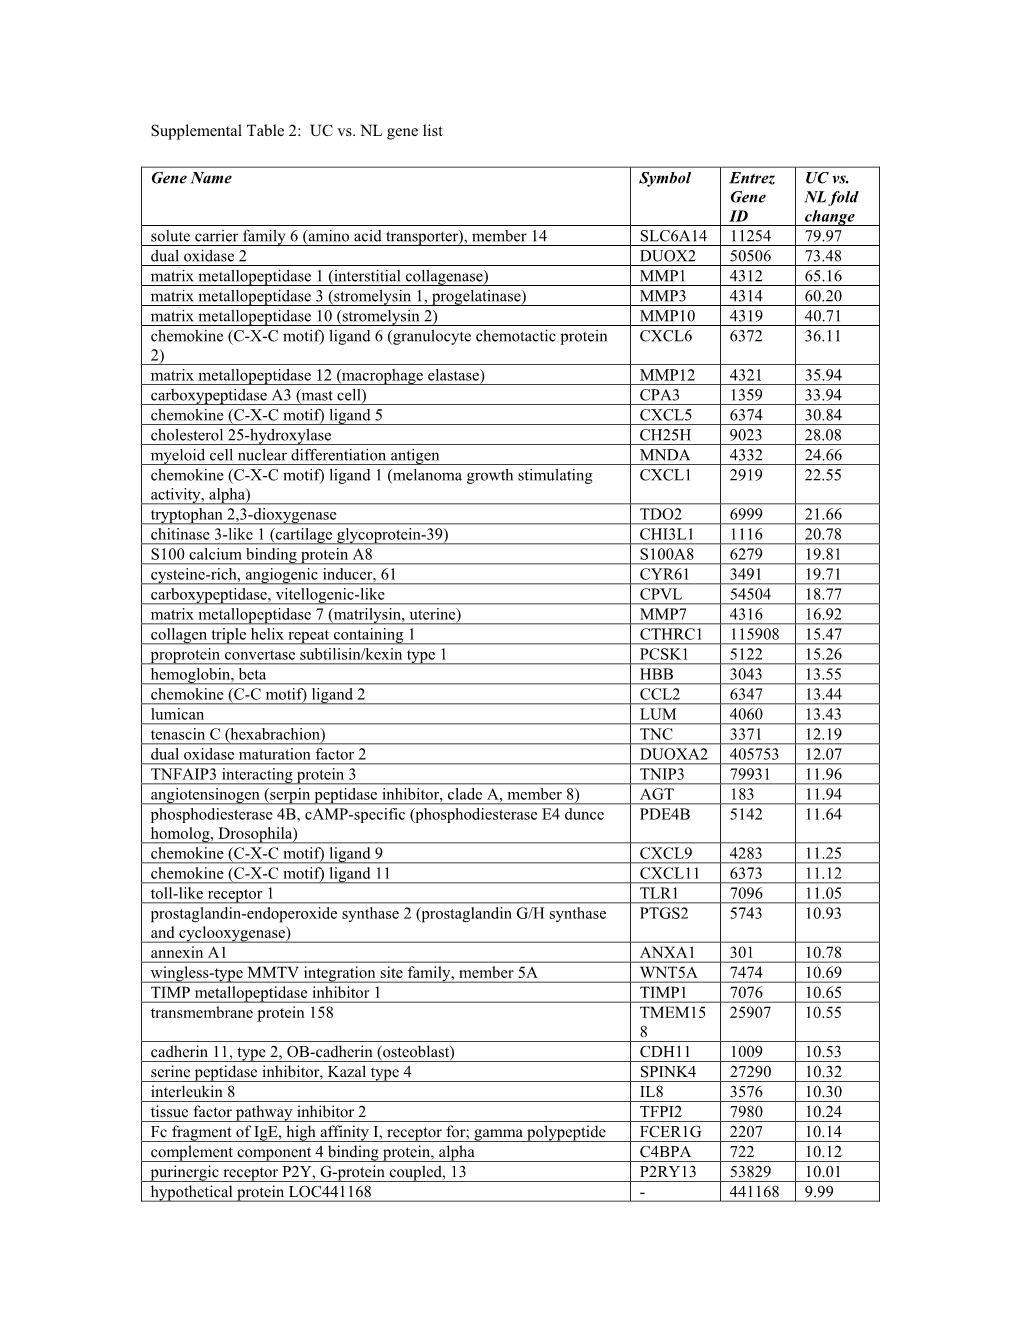 Supplemental Table 2: UC Vs. NL Gene List Gene Name Symbol